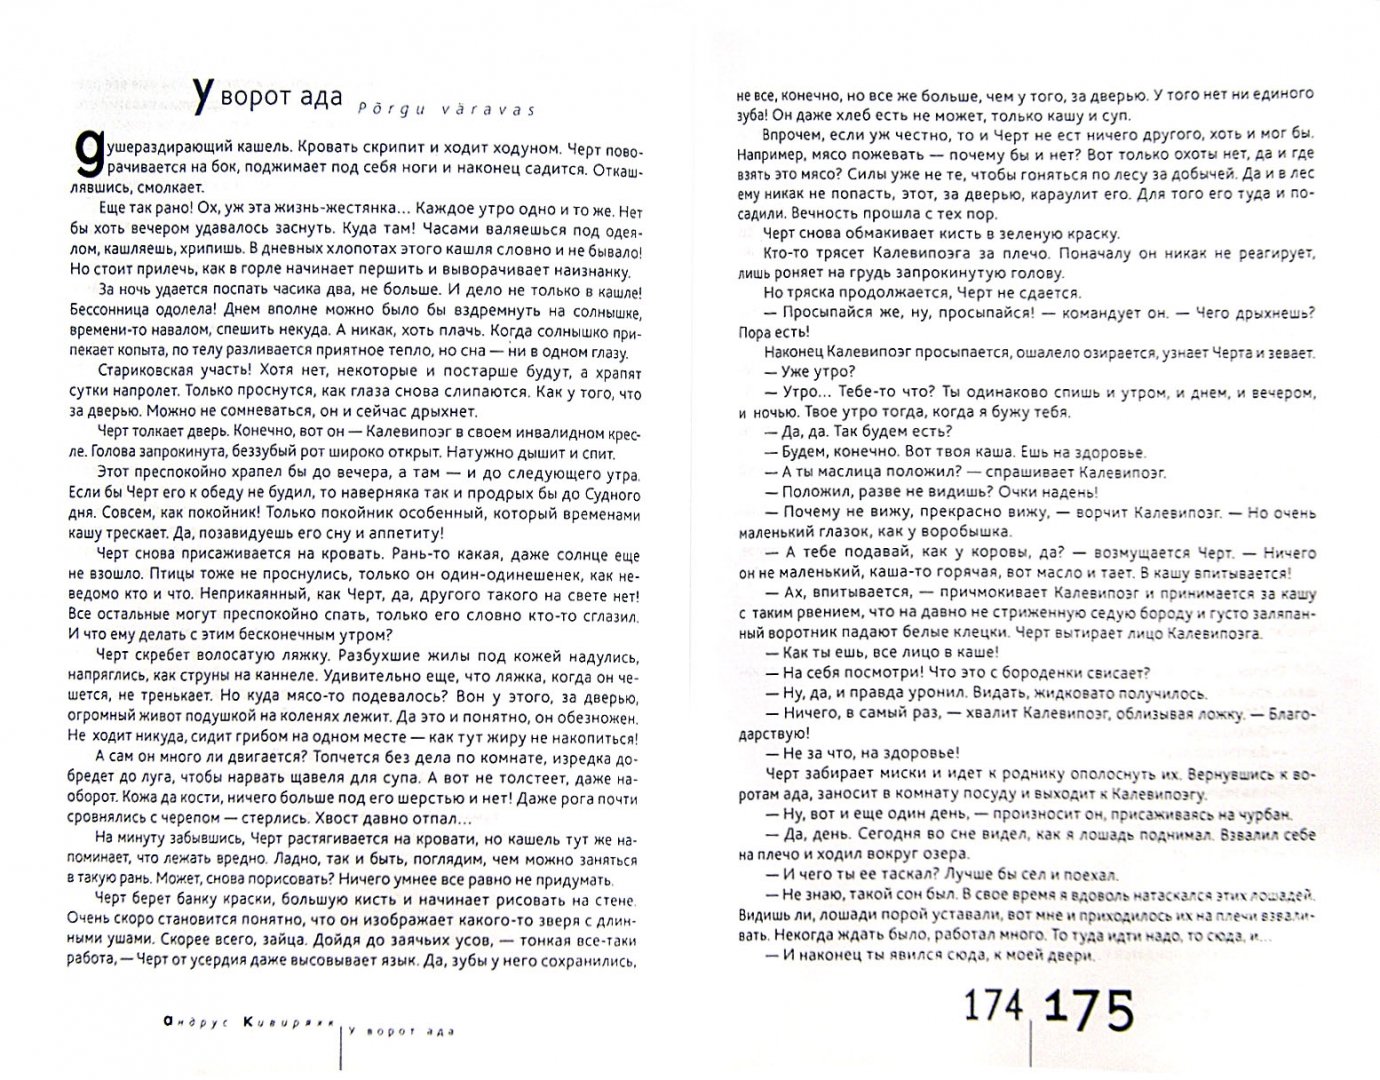 Иллюстрация 1 из 2 для Казус пристального взгляда. Эстонская новелла 2000-2012 гг. - Валтон, Вейдеманн, Винт | Лабиринт - книги. Источник: Лабиринт